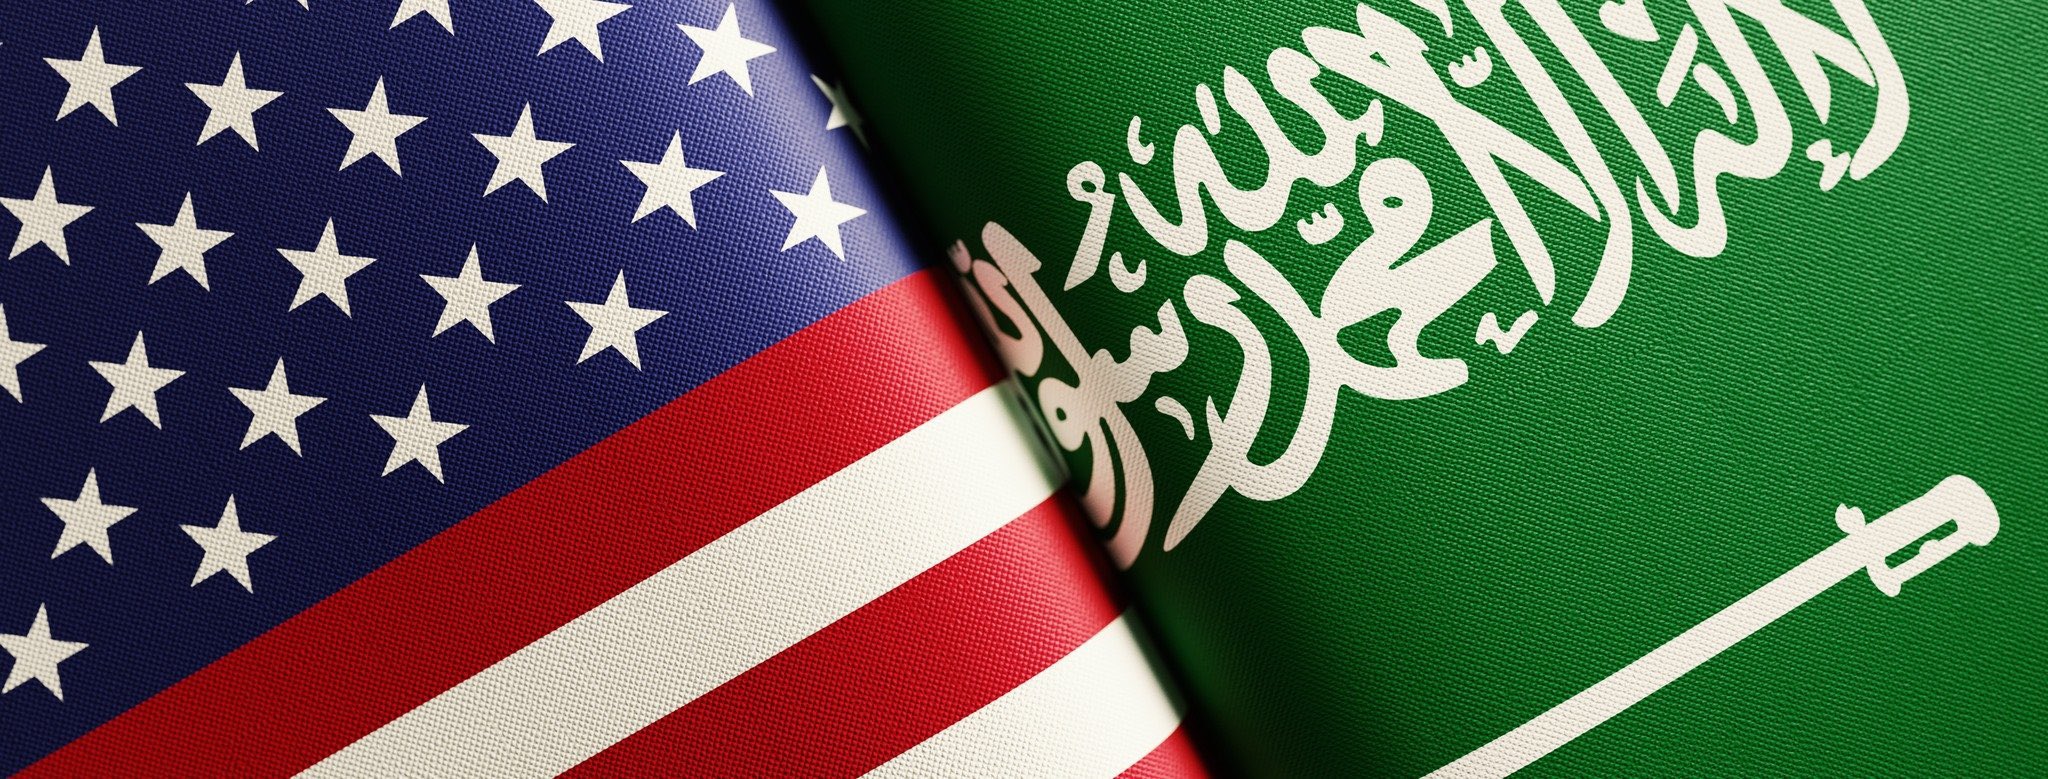 السفارة الأمريكية : ندين الهجمات الحوثية المشينة على السعودية